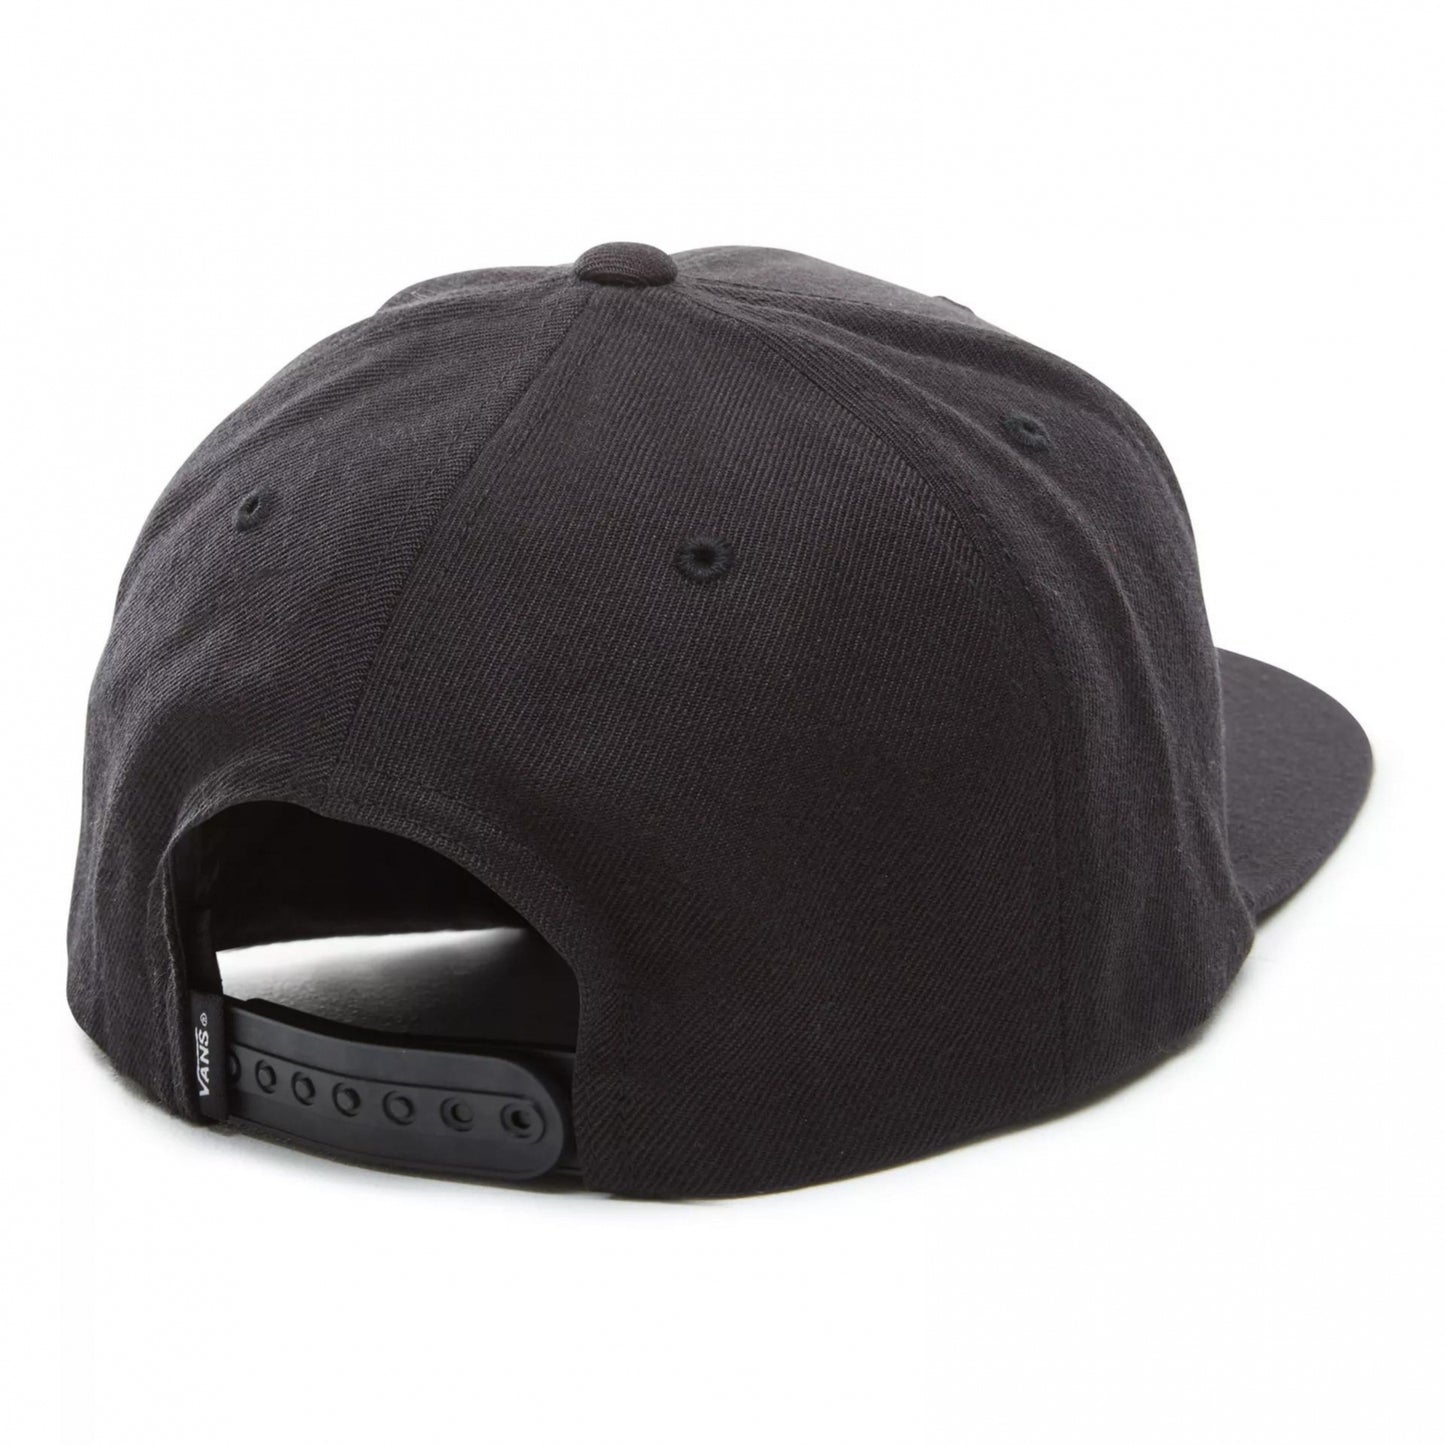 Vans Drop V II Snapback Hat BLACK